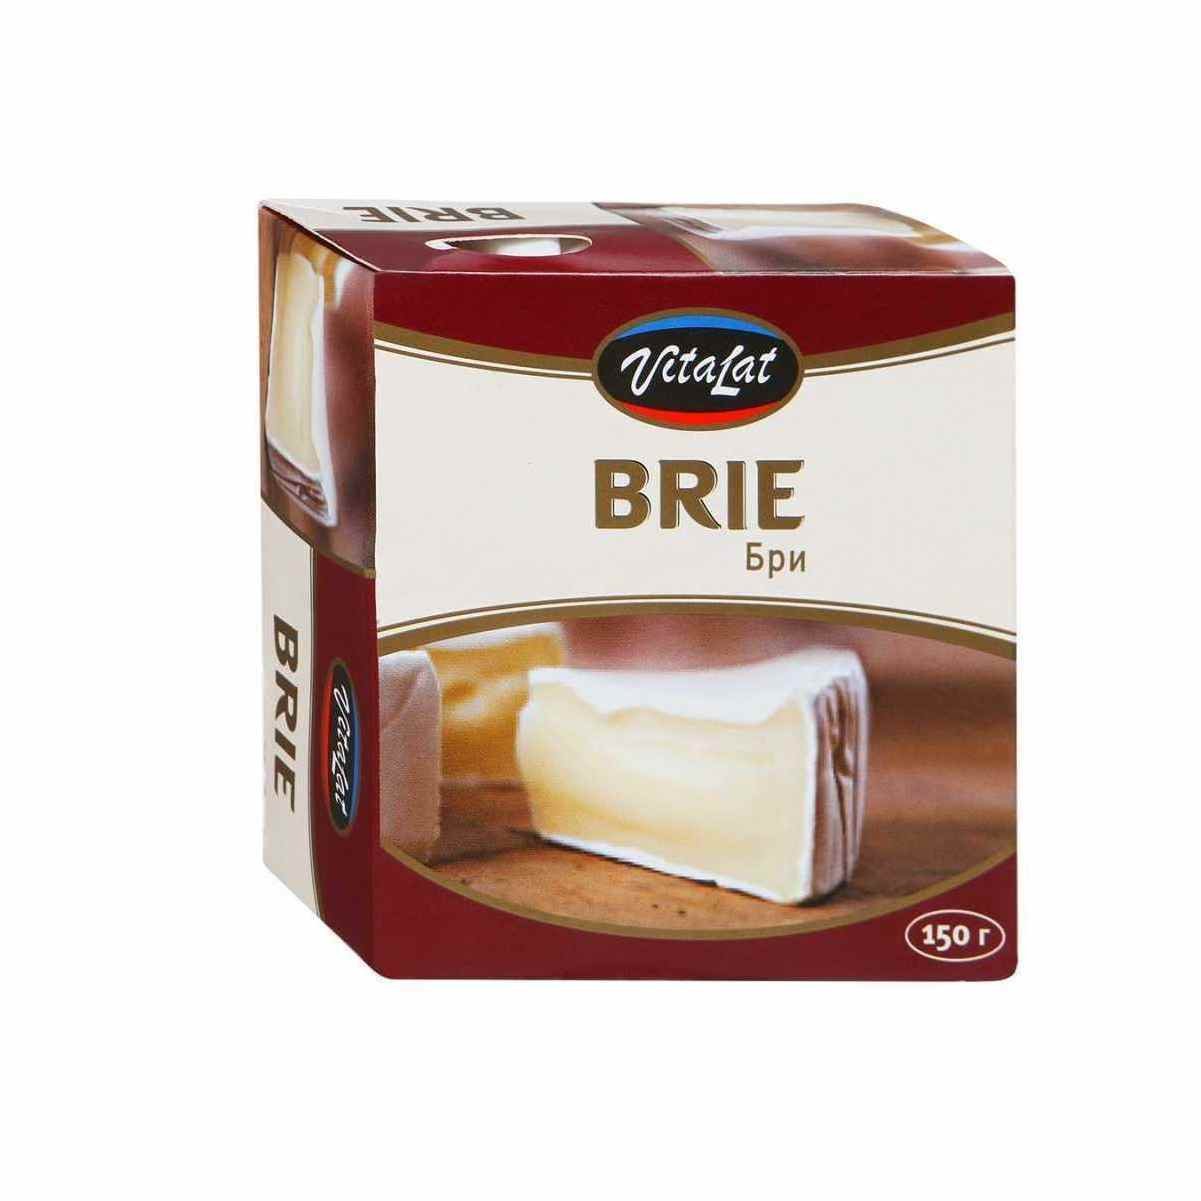 Сыр Виталат Бри мягкий с белой плесенью 60% 150г